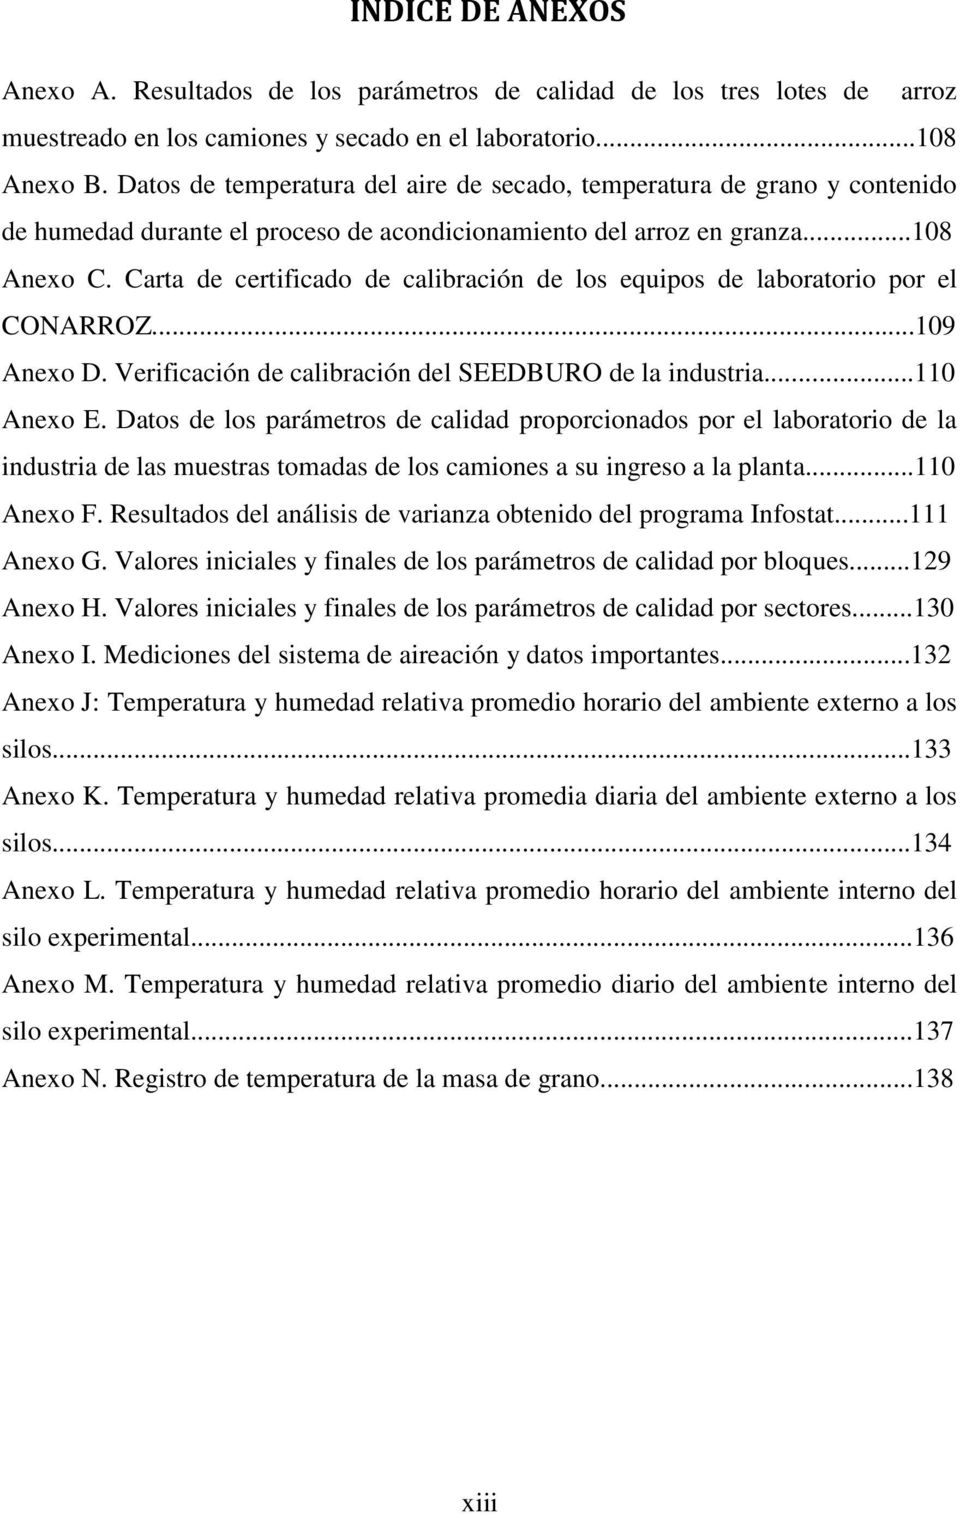 Carta de certificado de calibración de los equipos de laboratorio por el CONARROZ...109 Anexo D. Verificación de calibración del SEEDBURO de la industria...110 Anexo E.